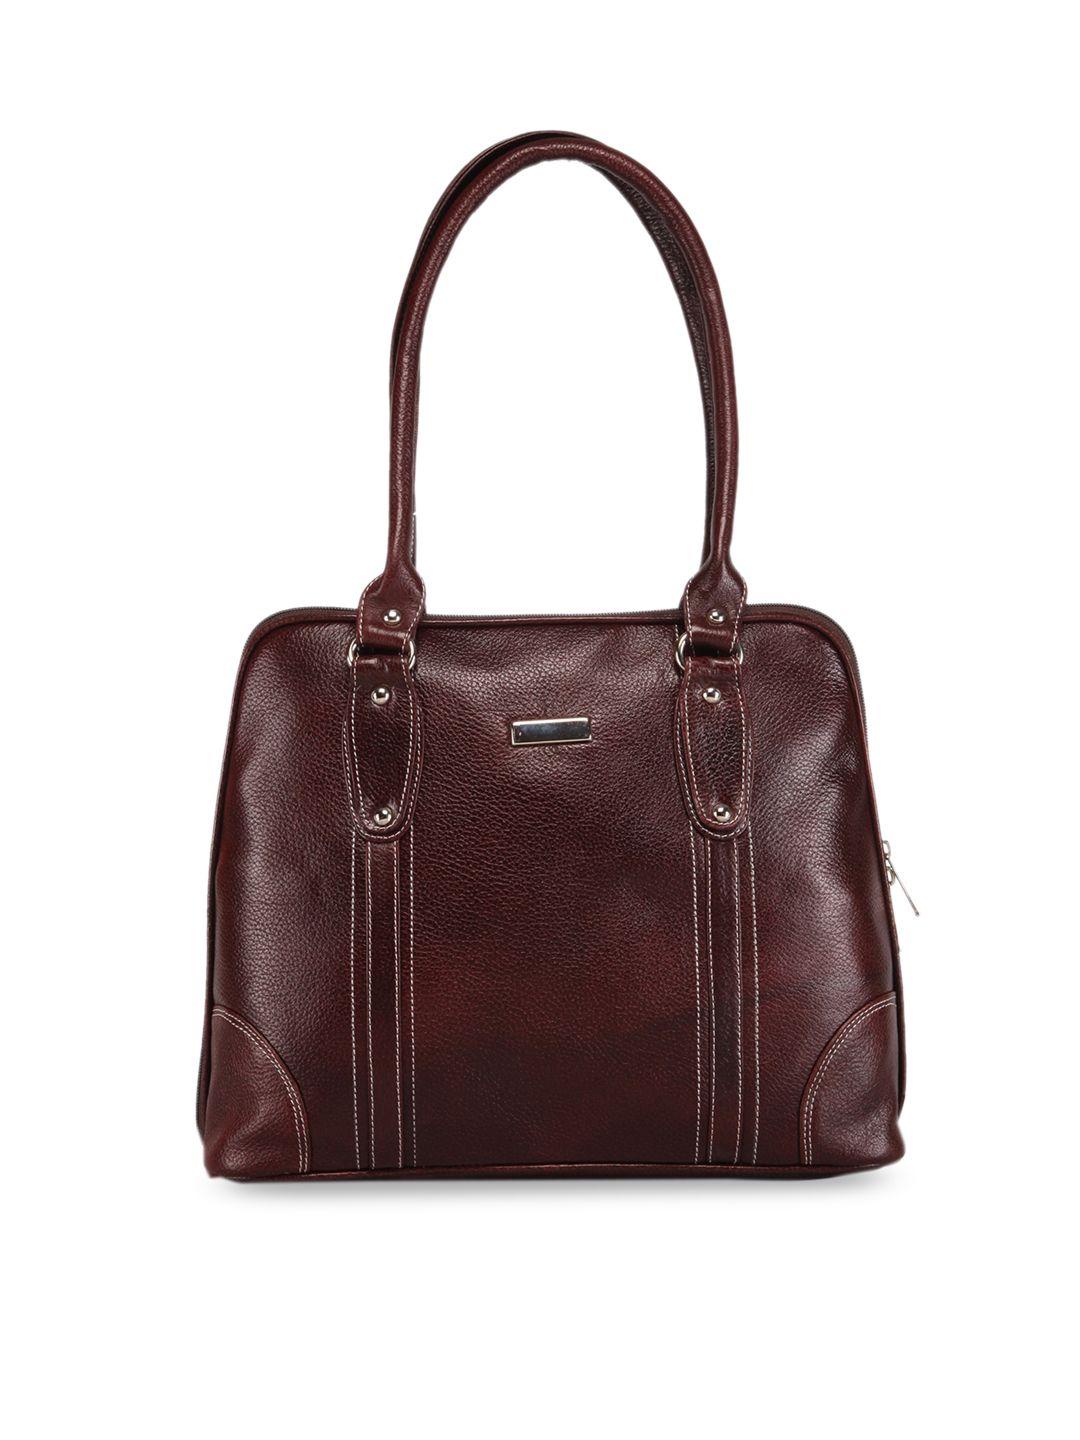 genwayne brown leather structured shoulder bag